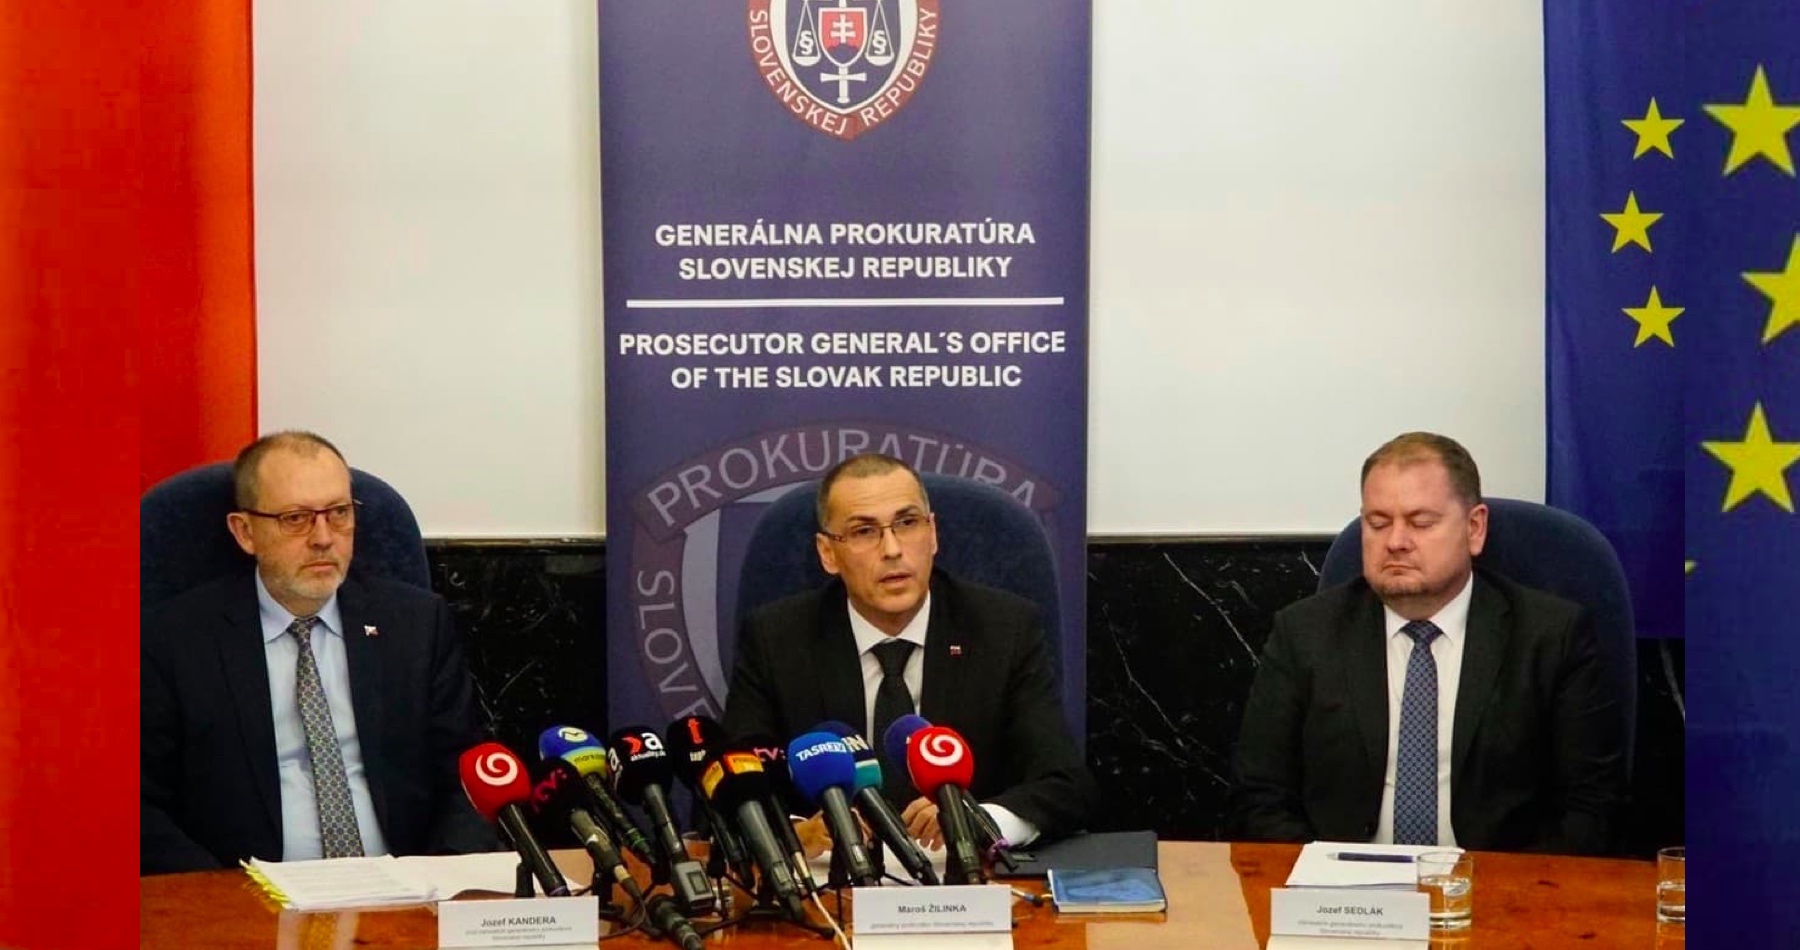 VIDEO: Generálna prokuratúra SR zrušila obvinenia voči Ficovi, Kaliňákovi, Gašparovi a Bödörovi, ktoré v kauze Súmrak vykonštruovala skupina vyšetrovateľov NAKA 